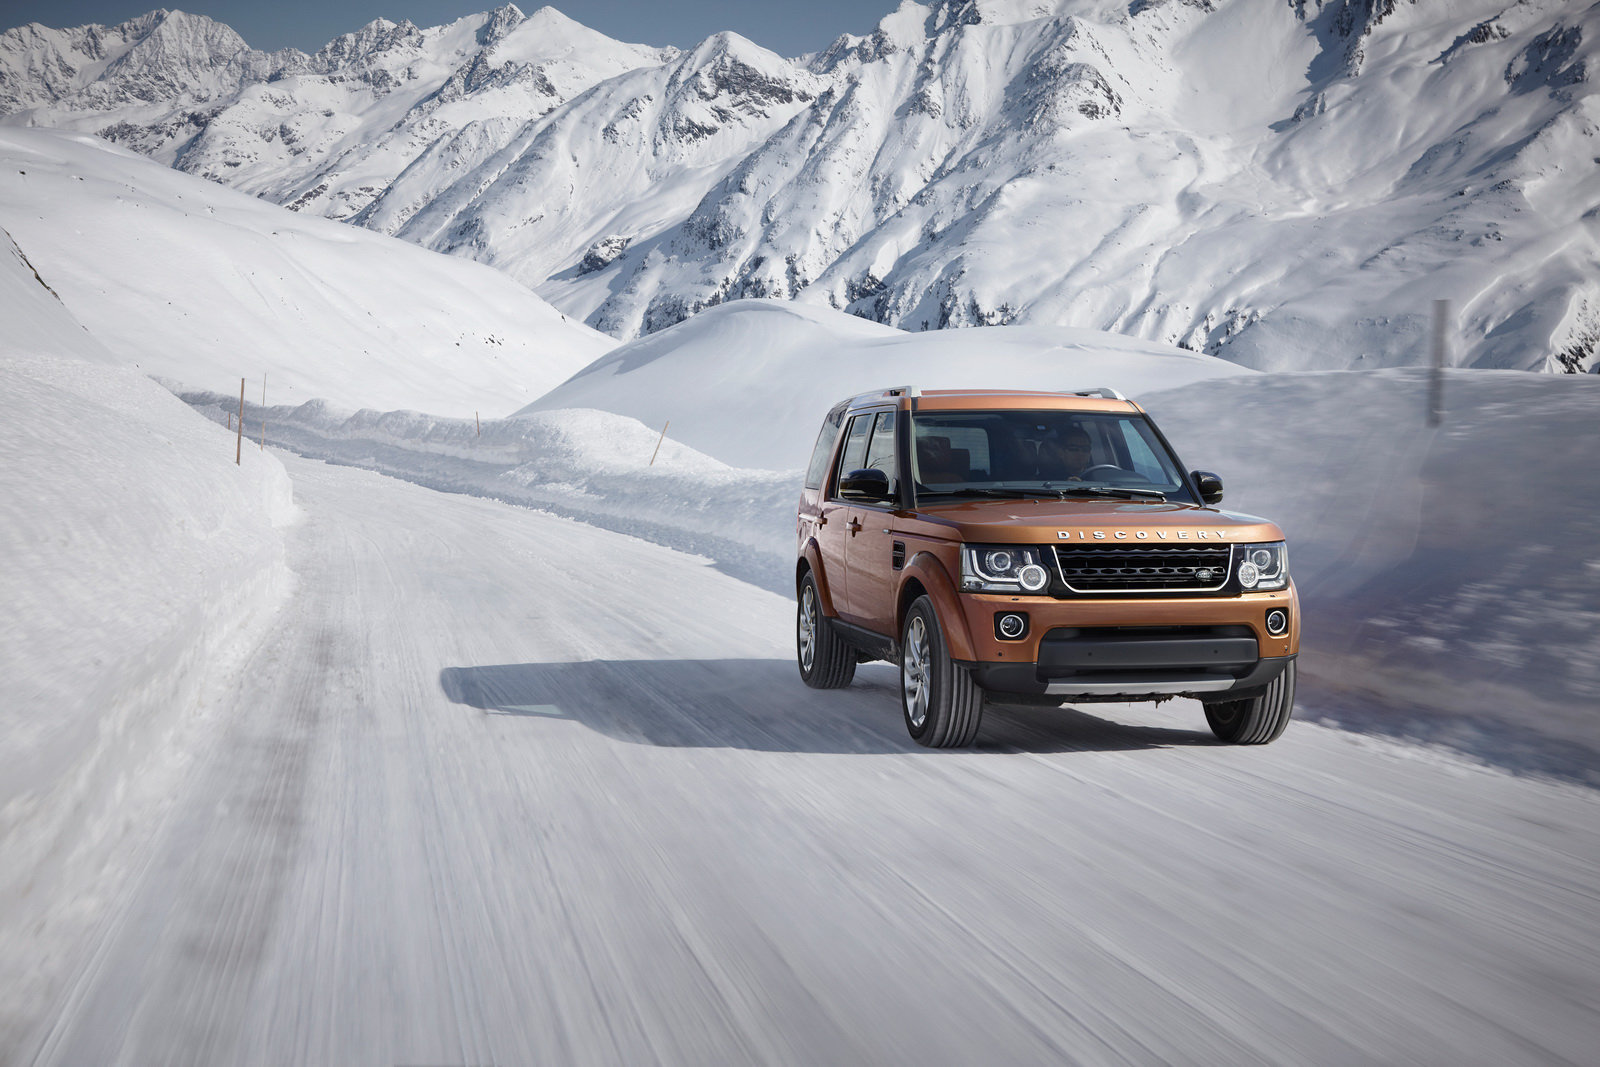 Cena není nejnižší, ale ospravedlnitelná, Land Rover Discovery Landmark.